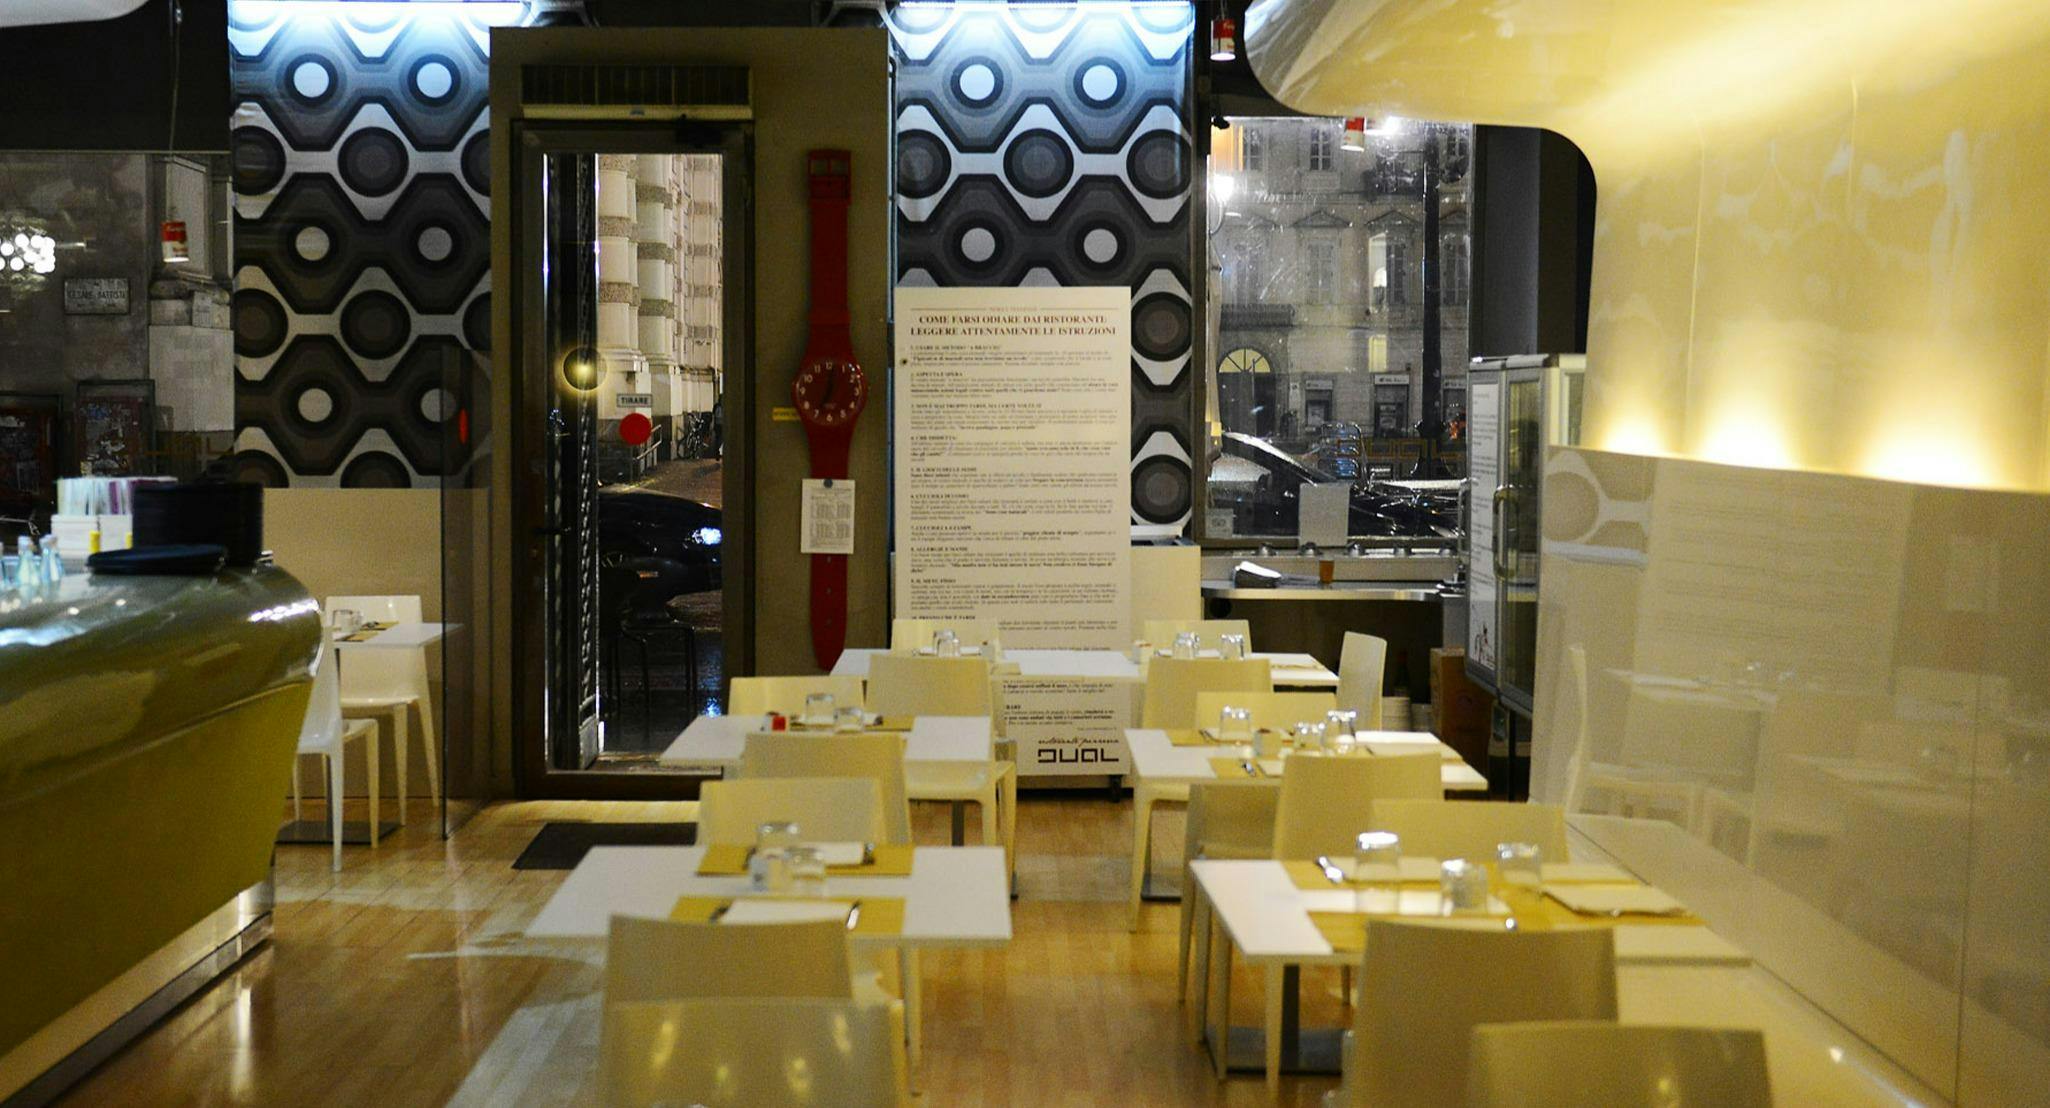 Photo of restaurant Dual Ristorante Pizzeria in City Centre, Turin